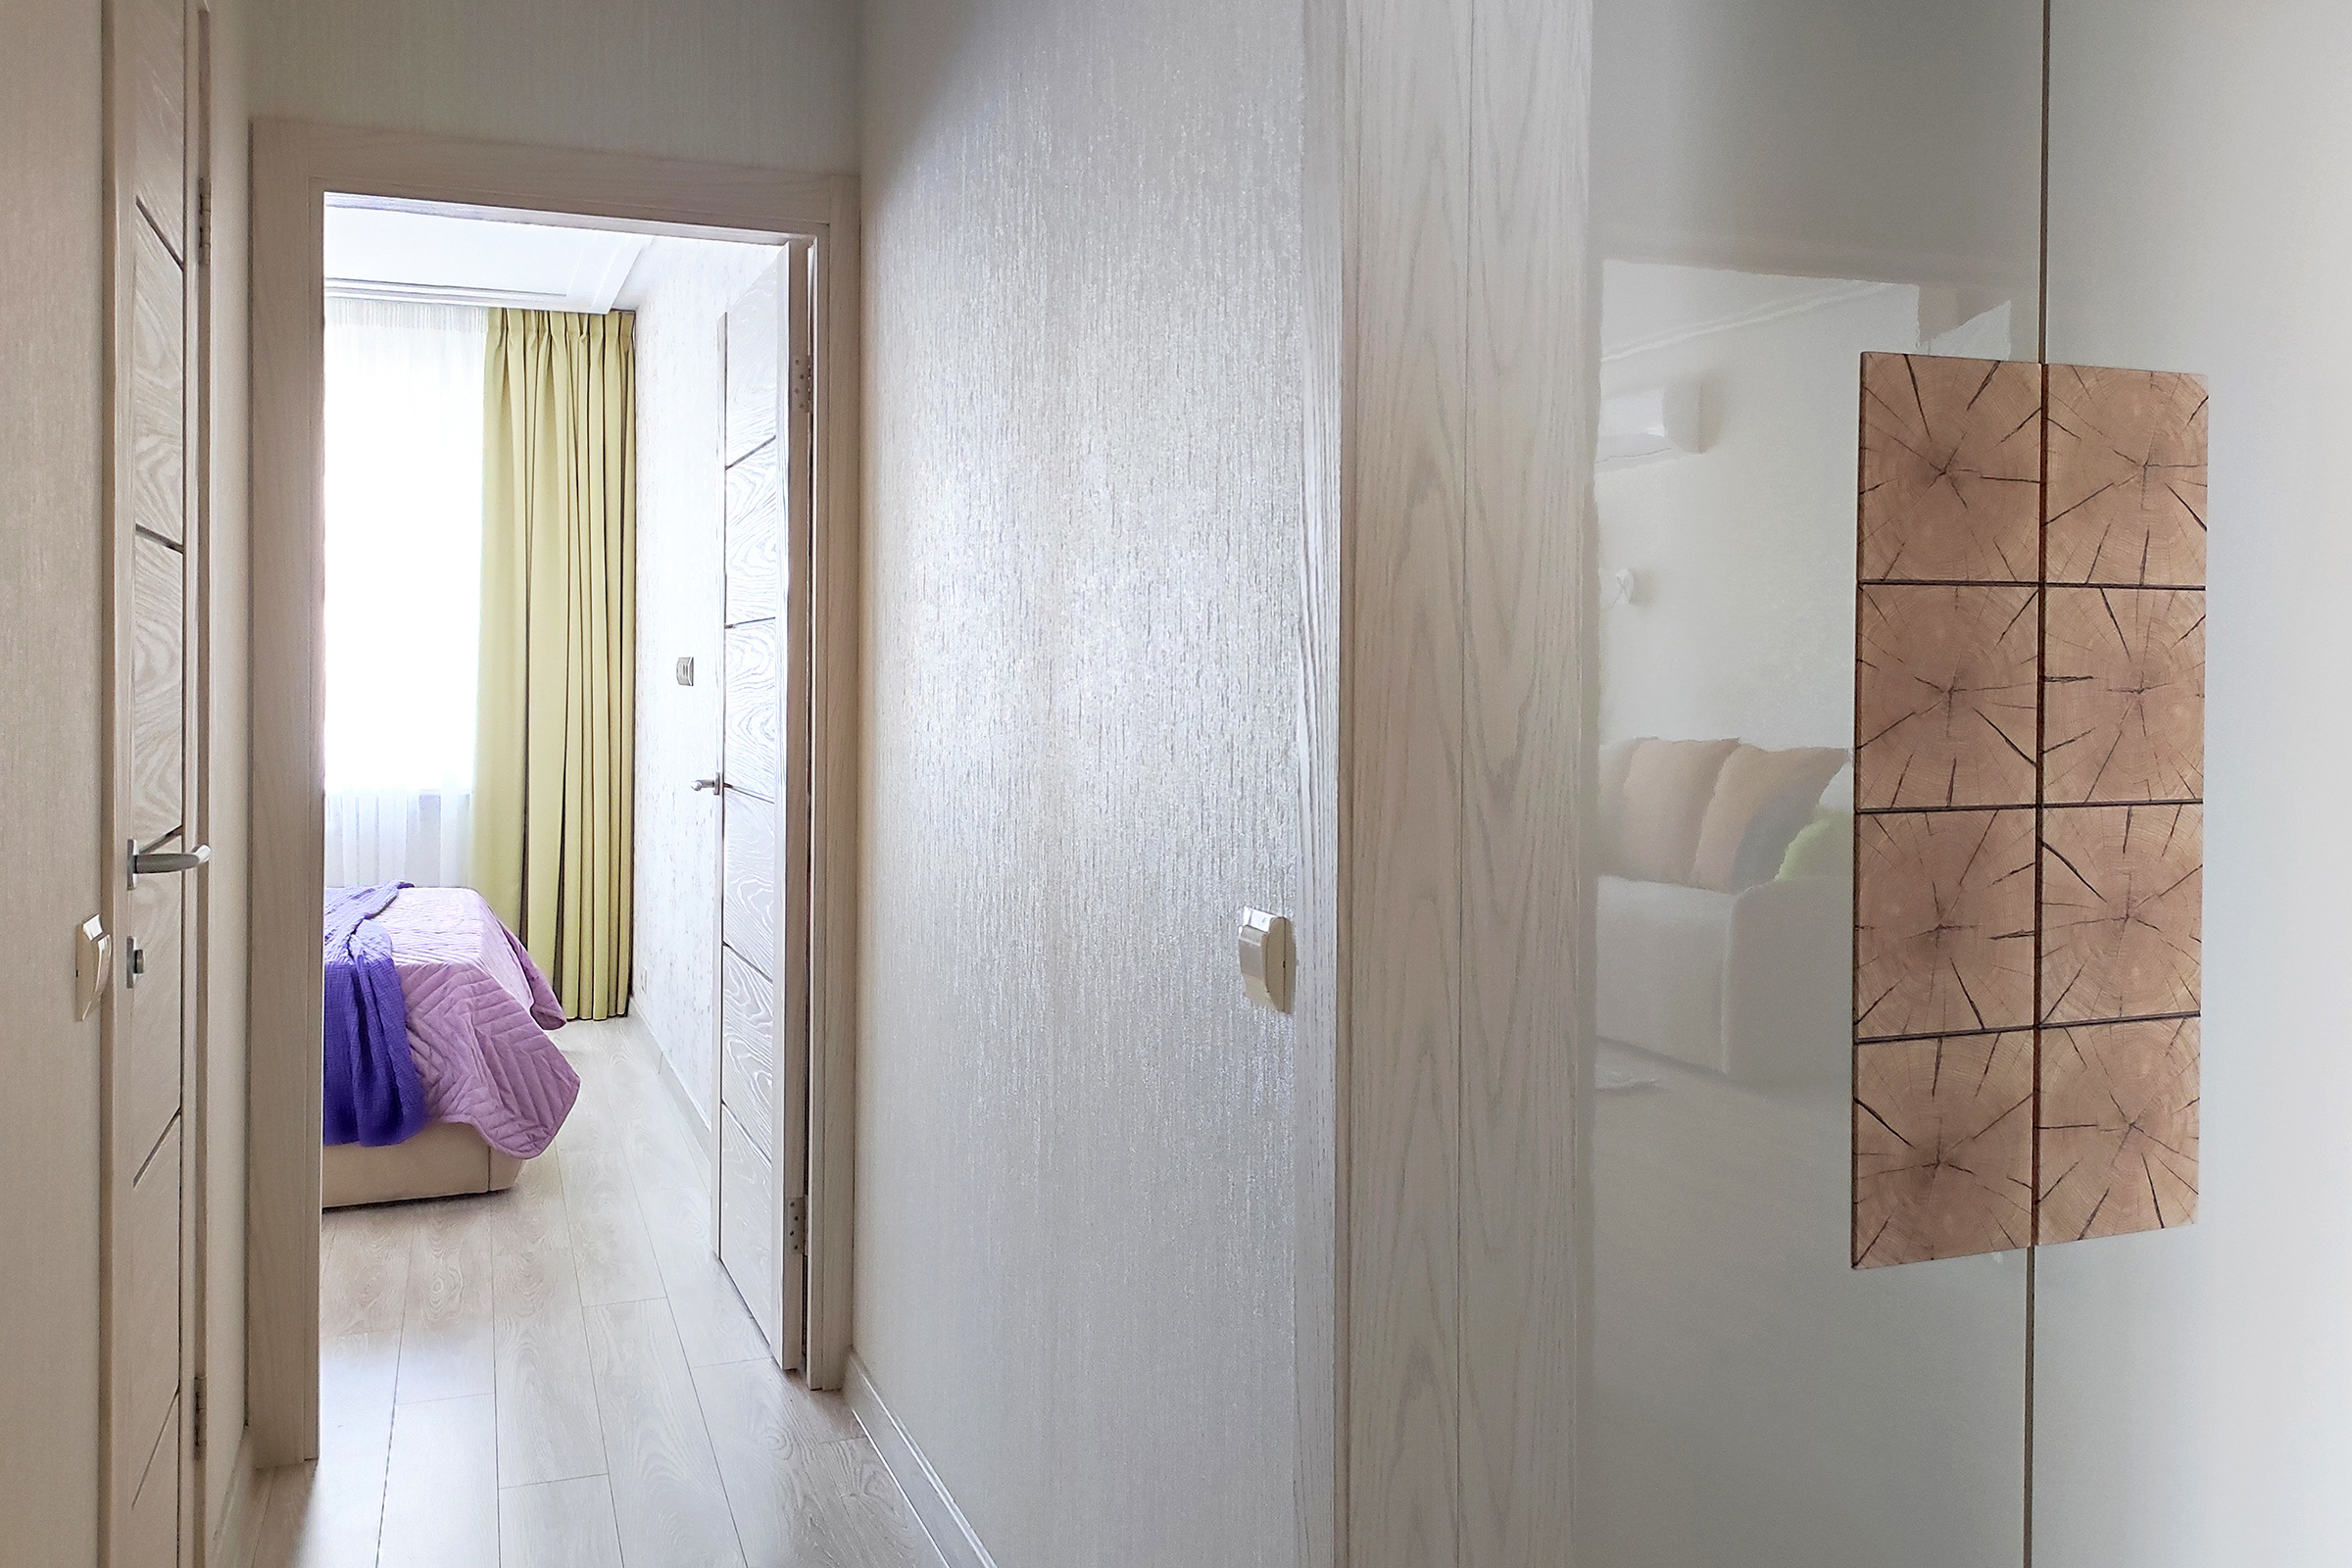 Вид из коридора на спальню помогает гостям понять планировку квартиры